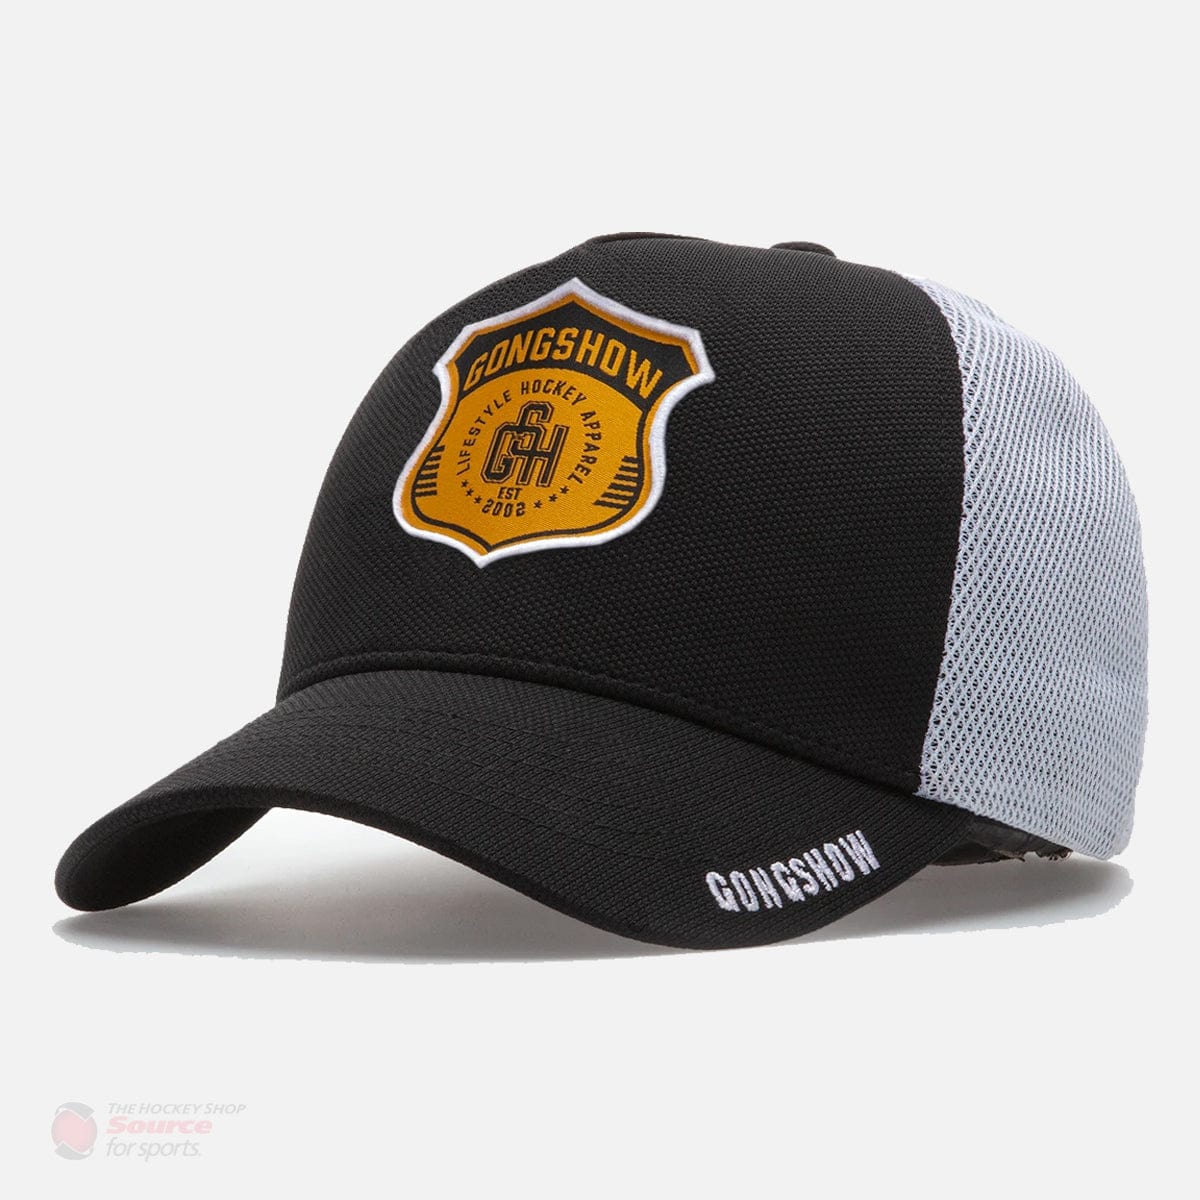 Gongshow Hockey Flash The Badge Snapback Hat